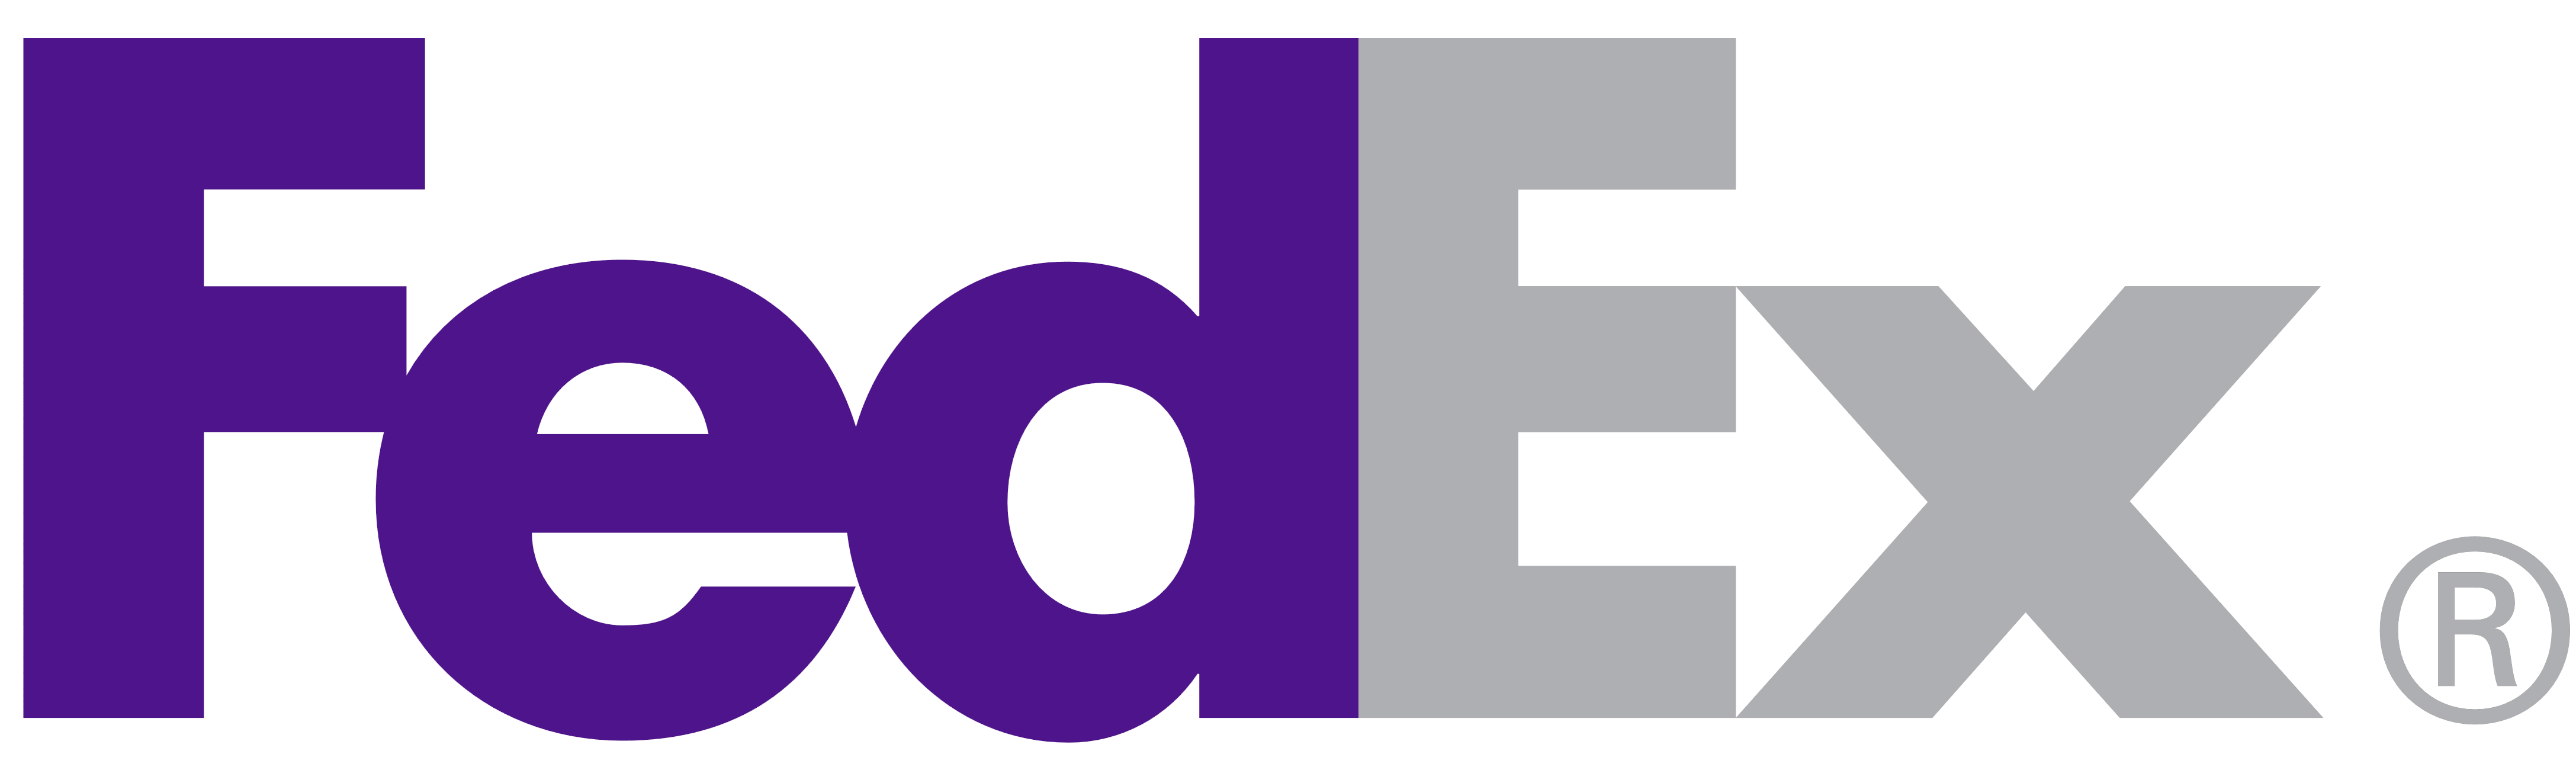 All FedEx Logo - FedEx – Logos Download